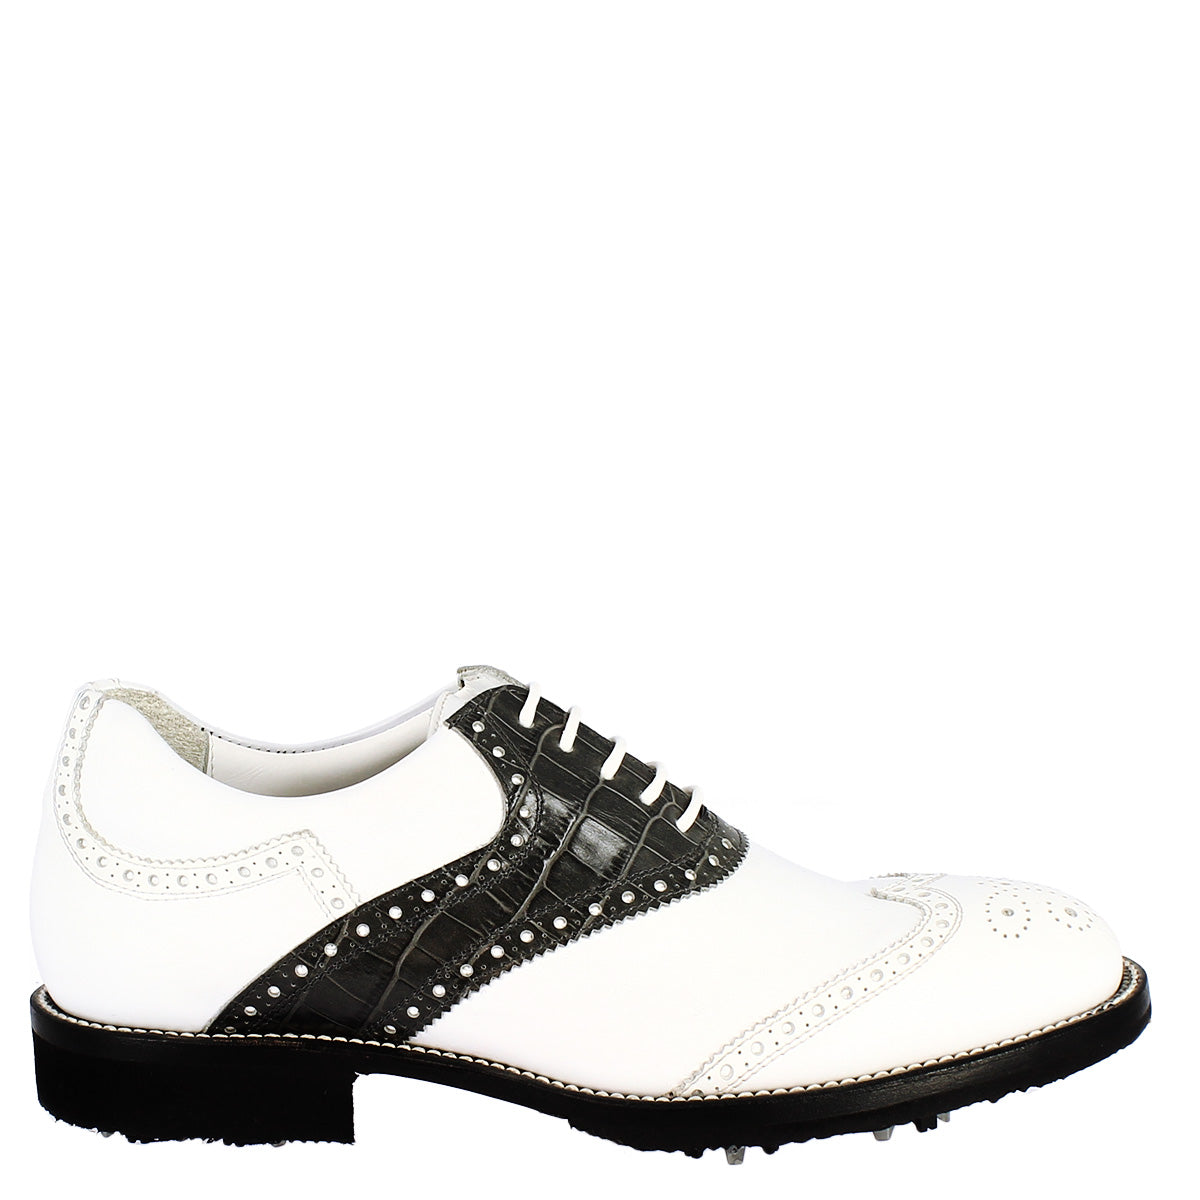 Chaussures de golf pour homme fabriquées à la main en cuir pleine fleur noir et blanc